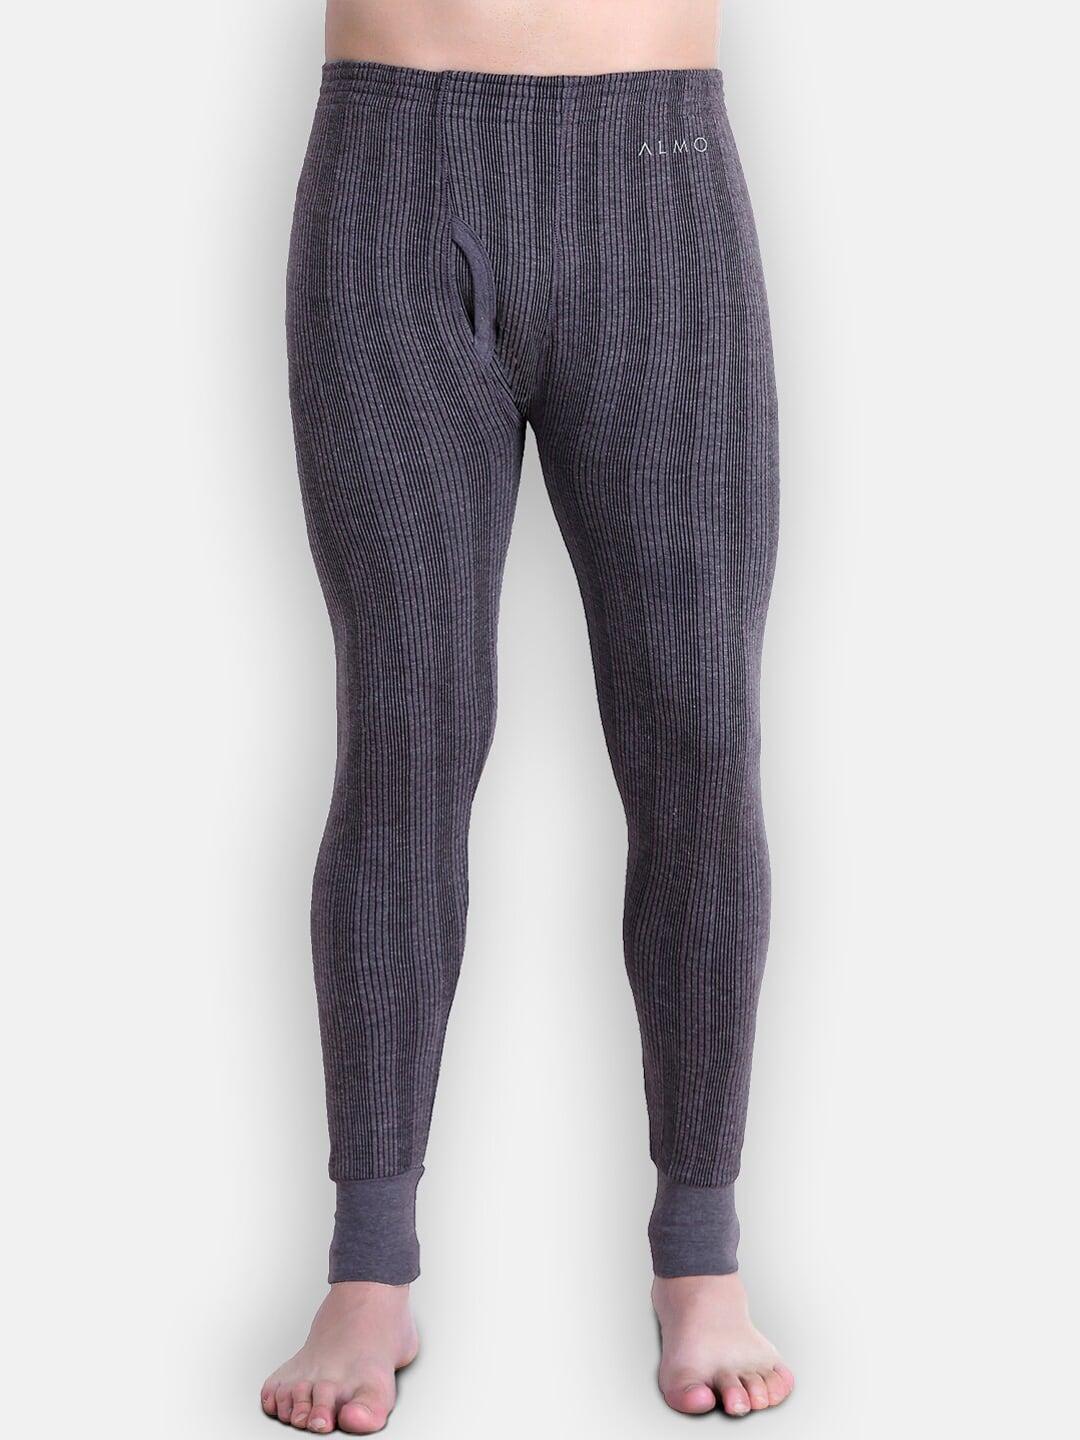 almo-wear-men-grey-&-black-striped-cotton-thermal-pants